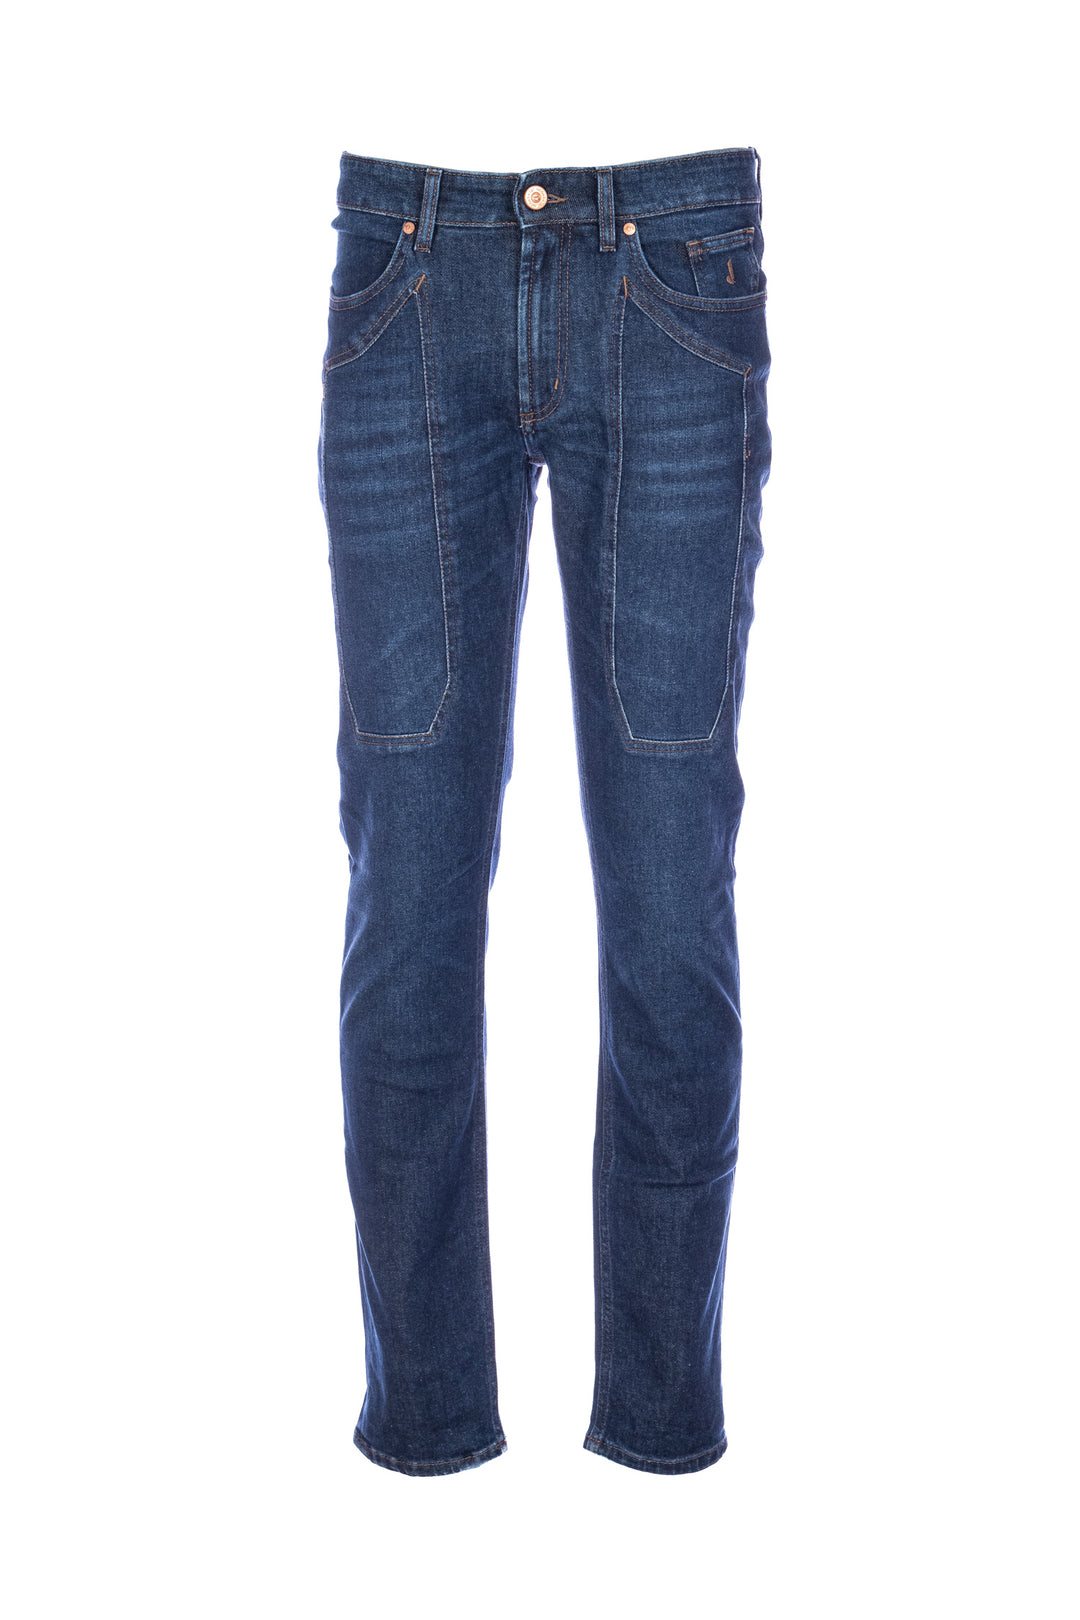 JECKERSON Jeans slim 5 tasche “JOHN” in denim di cotone stretch lavaggio scuro con toppe - Mancinelli 1954